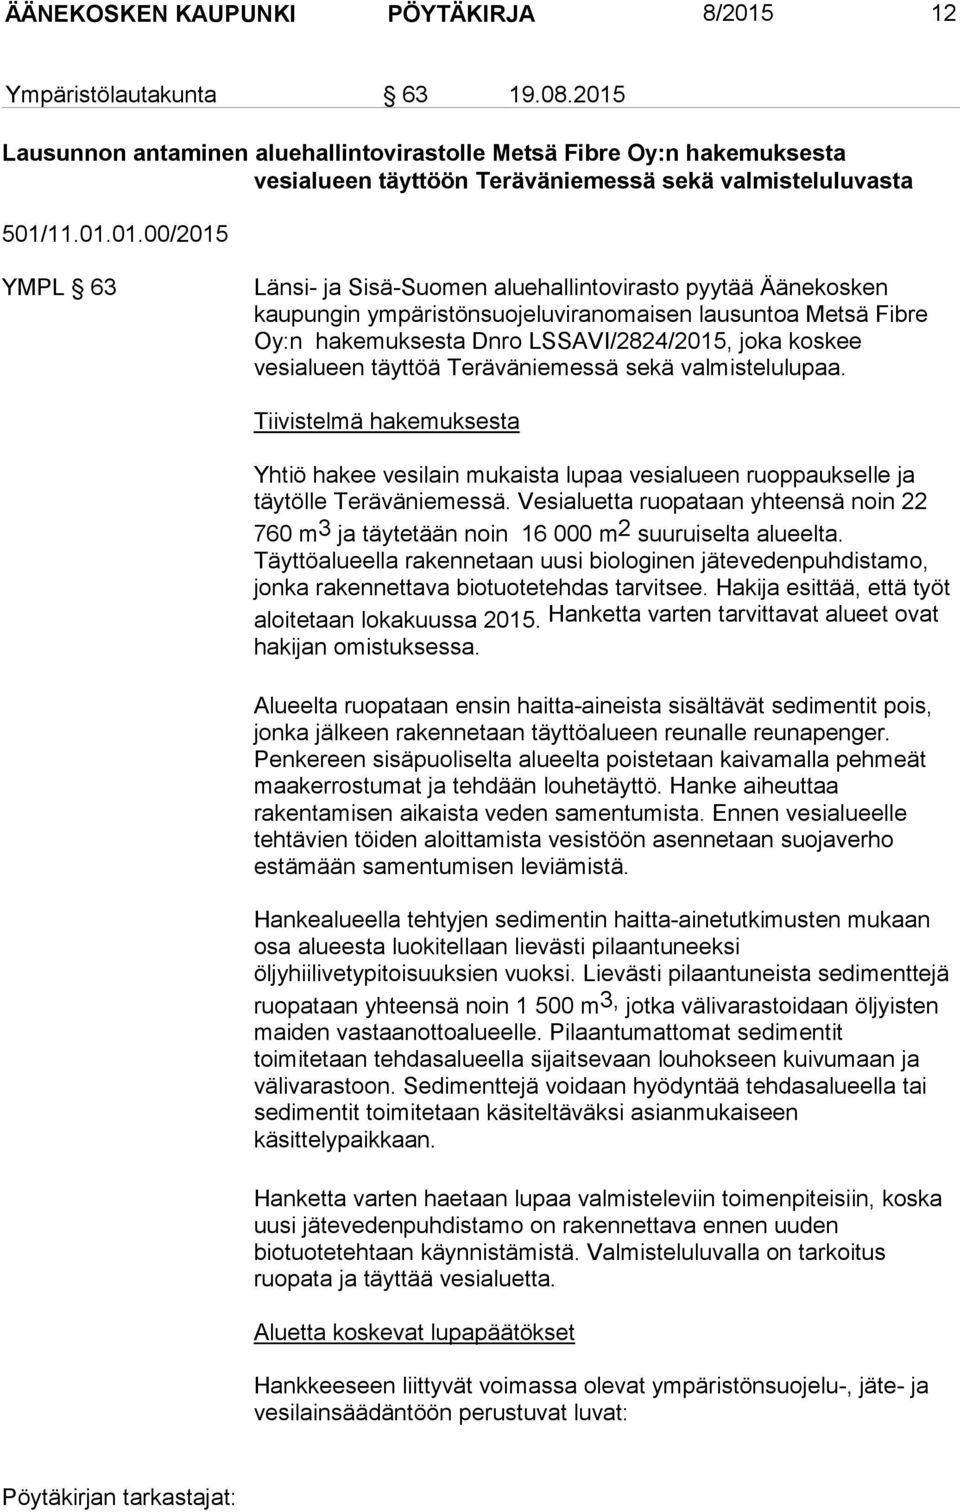 aluehallintovirasto pyytää Äänekosken kaupungin ympäristönsuojeluviranomaisen lausuntoa Metsä Fibre Oy:n hakemuksesta Dnro LSSAVI/2824/2015, joka koskee vesialueen täyttöä Teräväniemessä sekä